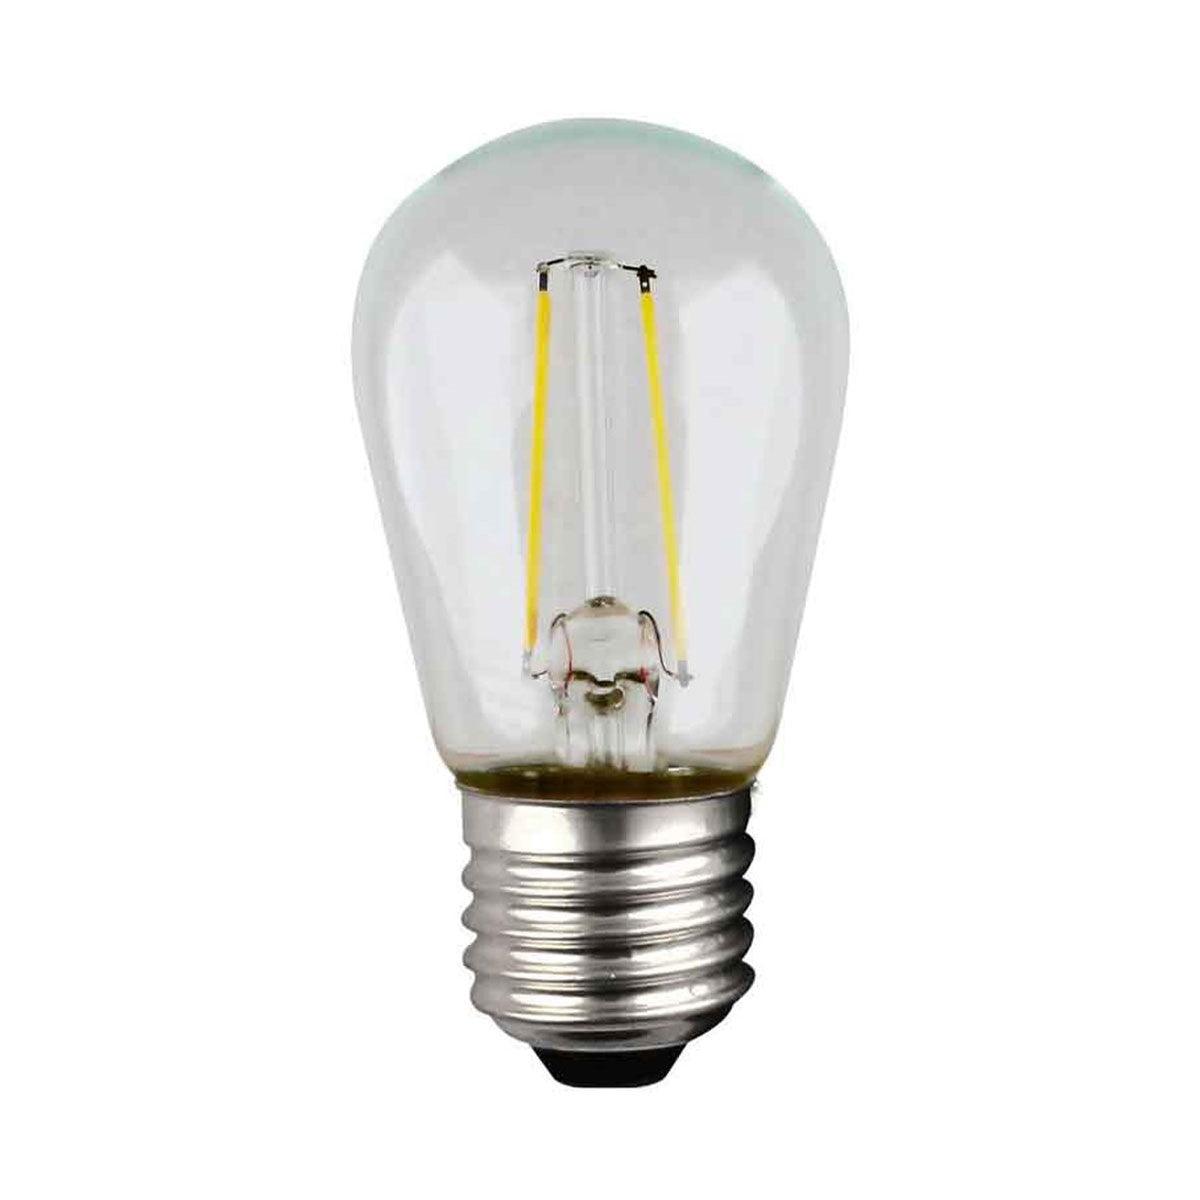 LED S14 Straight Tapered Bulb, 1 Watt, 100 Lumens, 2700K, E26 Medium Base, Clear Finish, Pack Of 4 - Bees Lighting